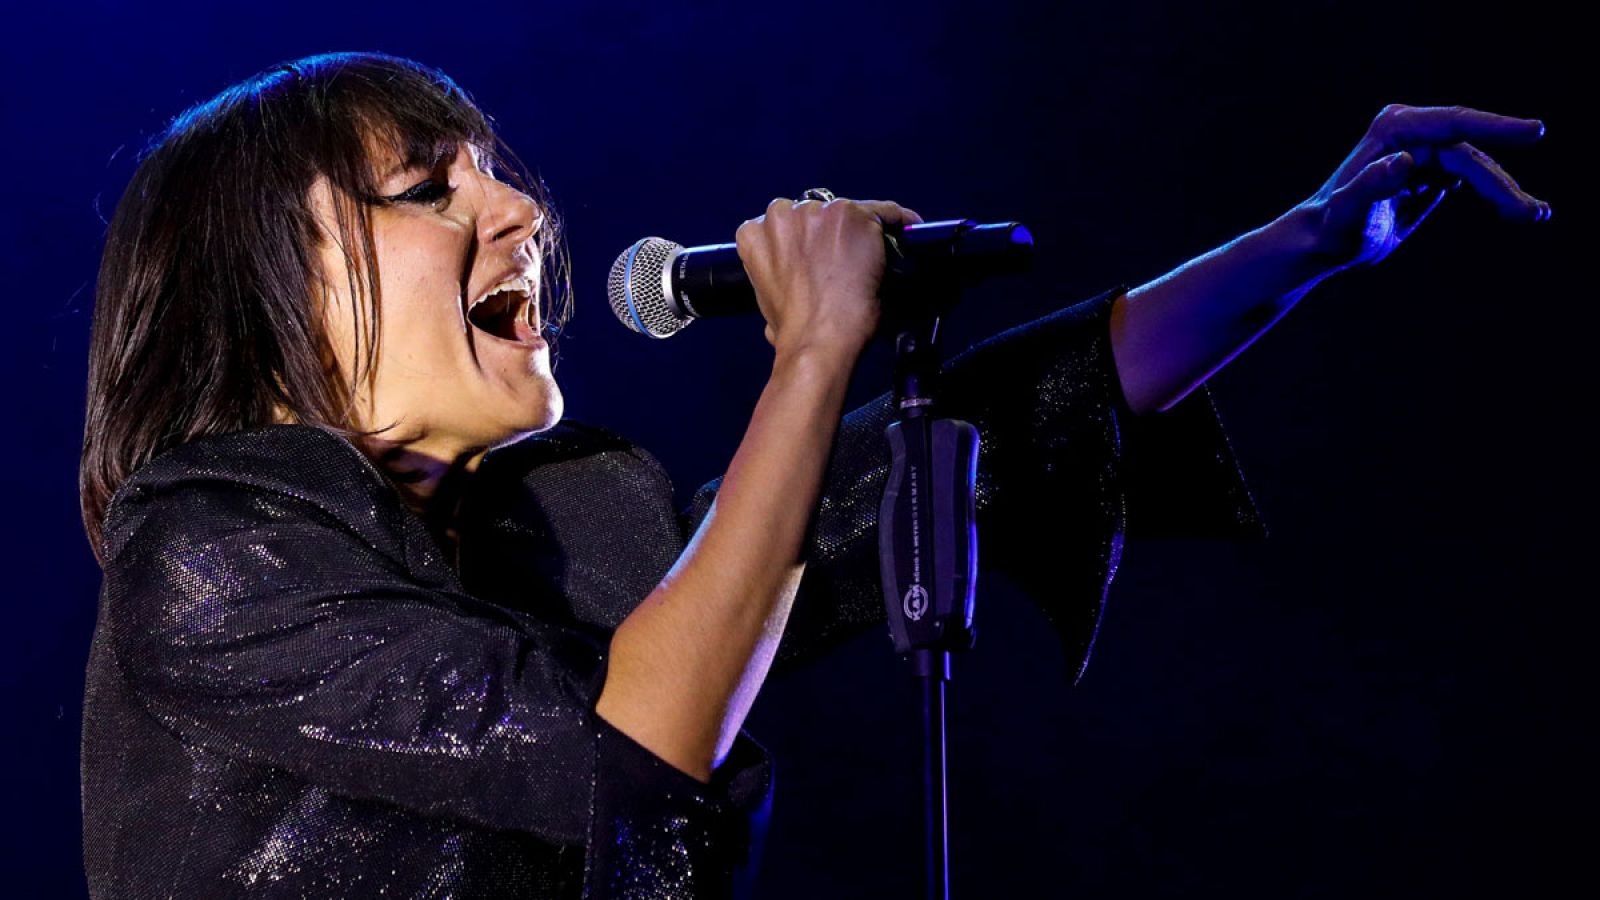 La cantante del grupo Amaral, Eva Amaral, durante su actuación en el festival Dcode 2019 que se celebra en el Campus de la UCM de Madrid.